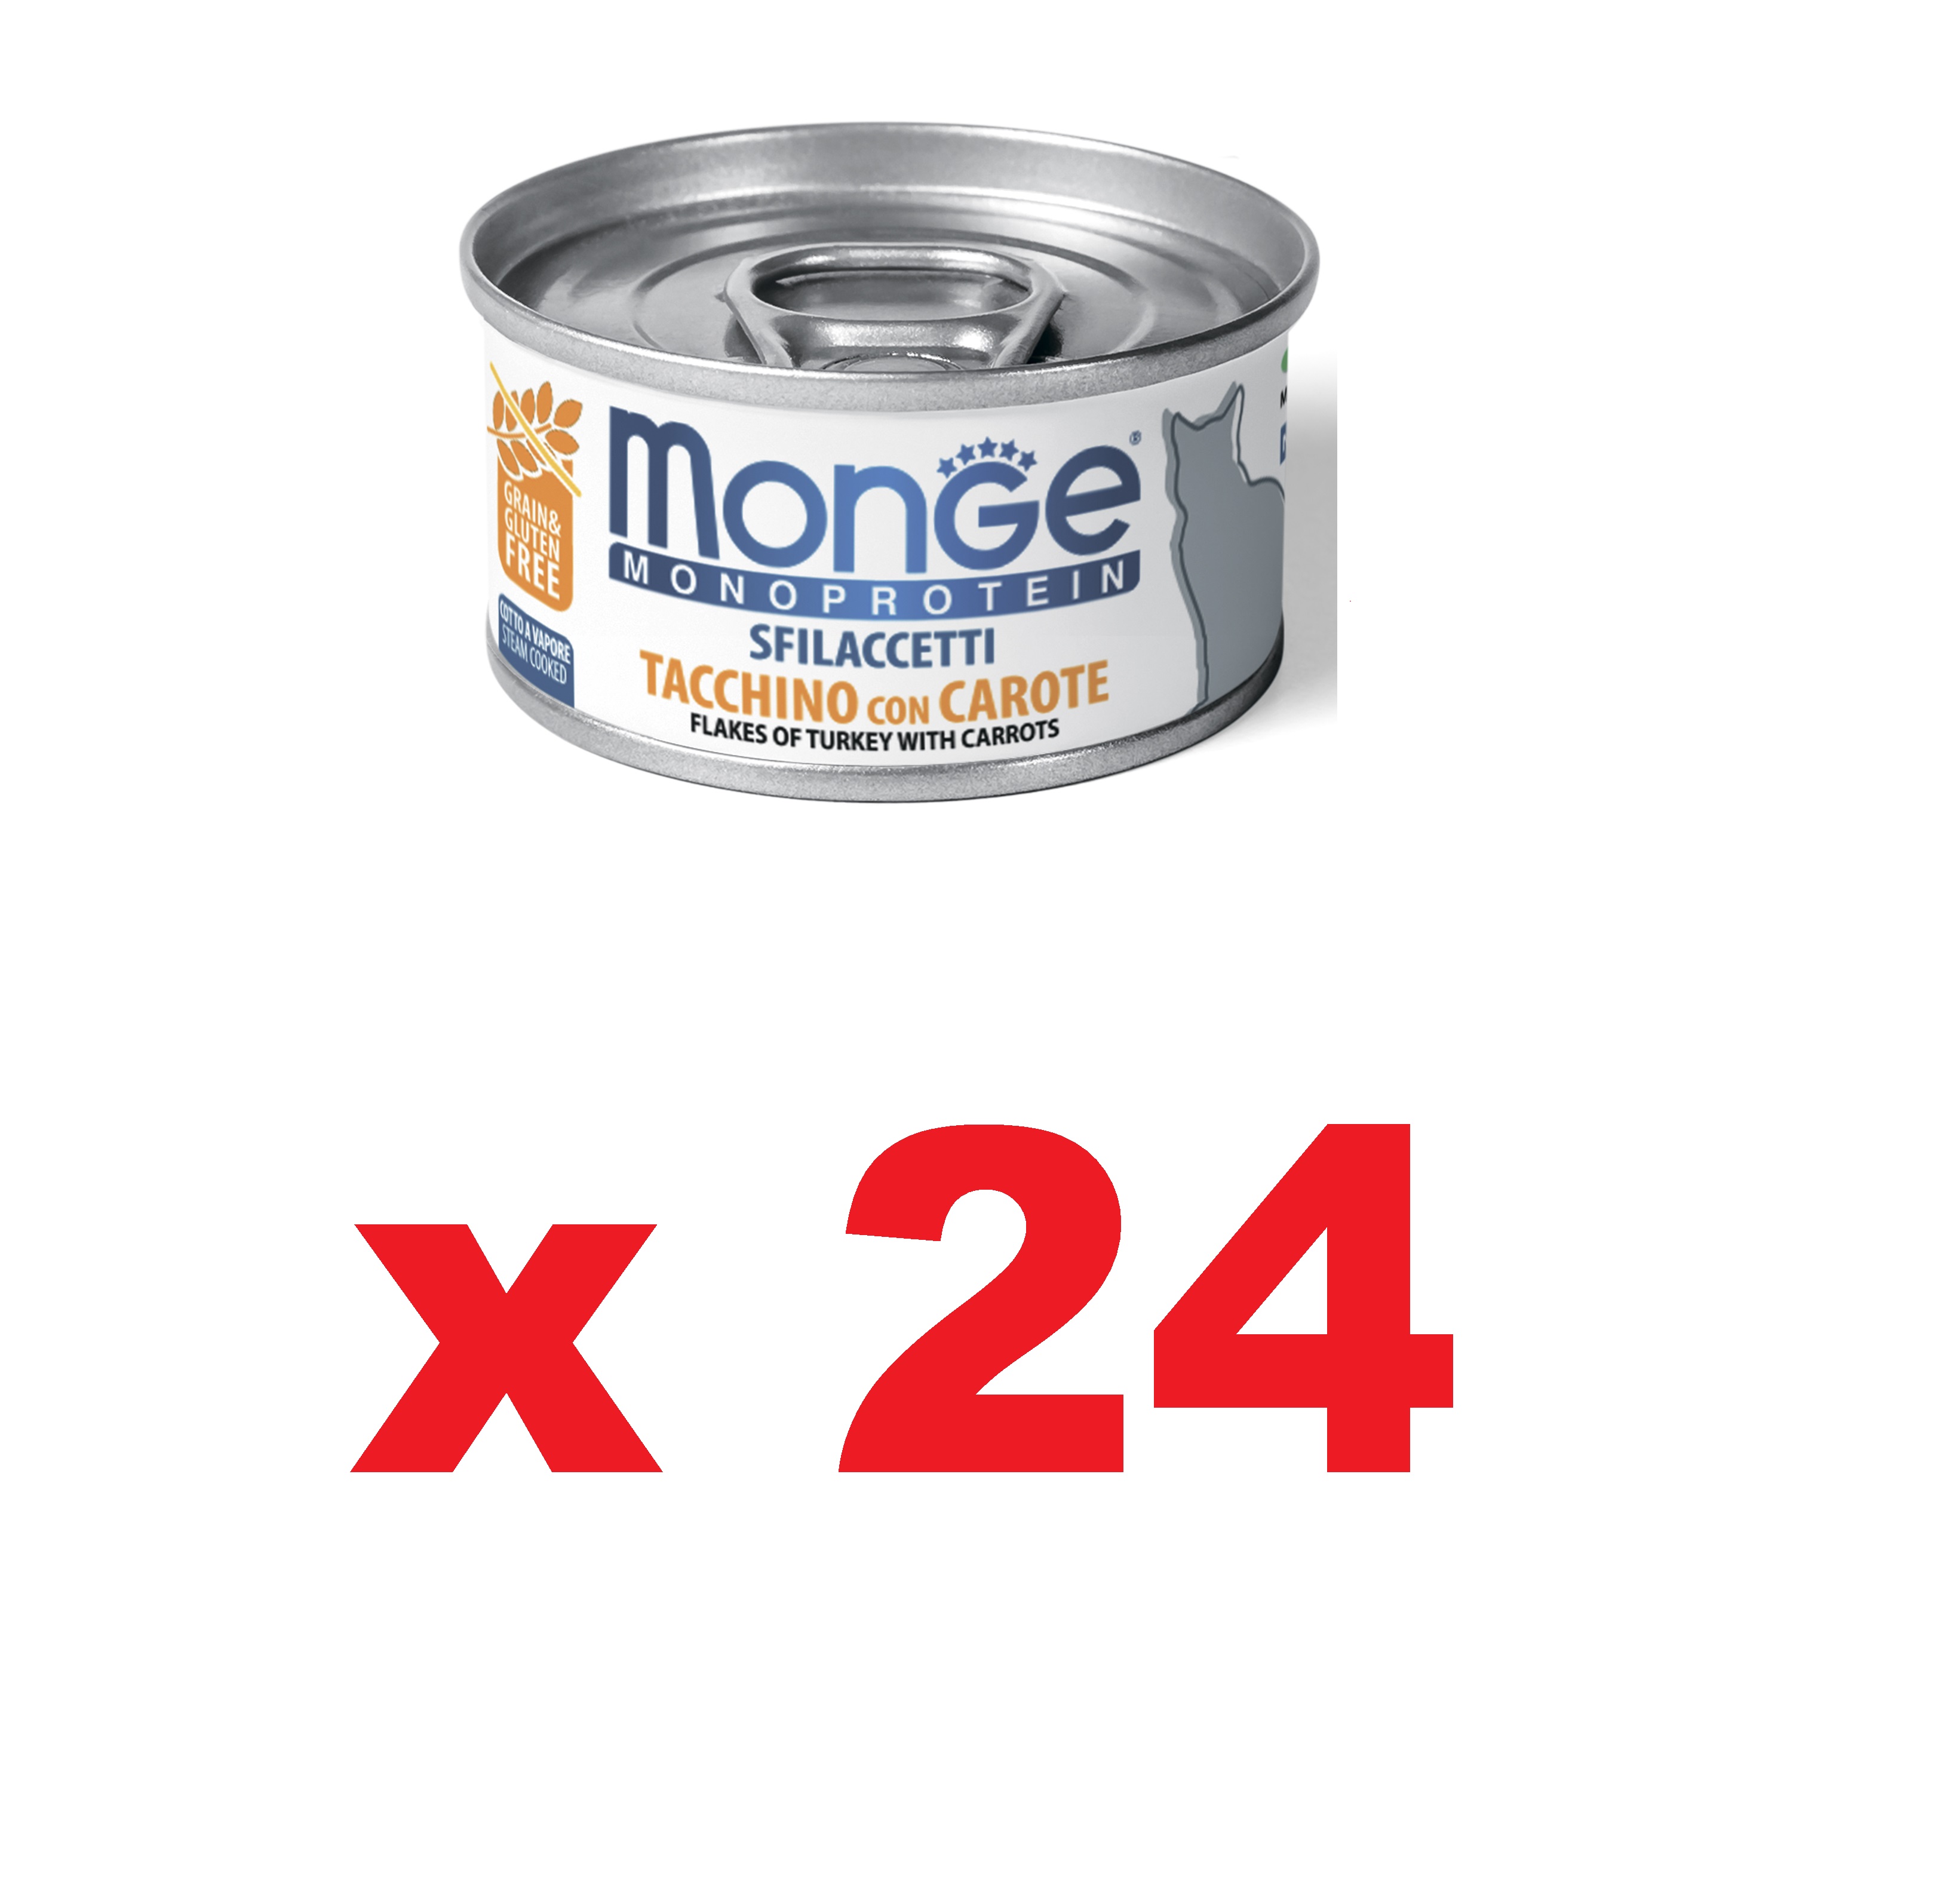 Монж 80гр - Cat Monoprotein - Индейка/Морковь - Мясные Хлопья - для кошек (Monge) 1кор = 24шт